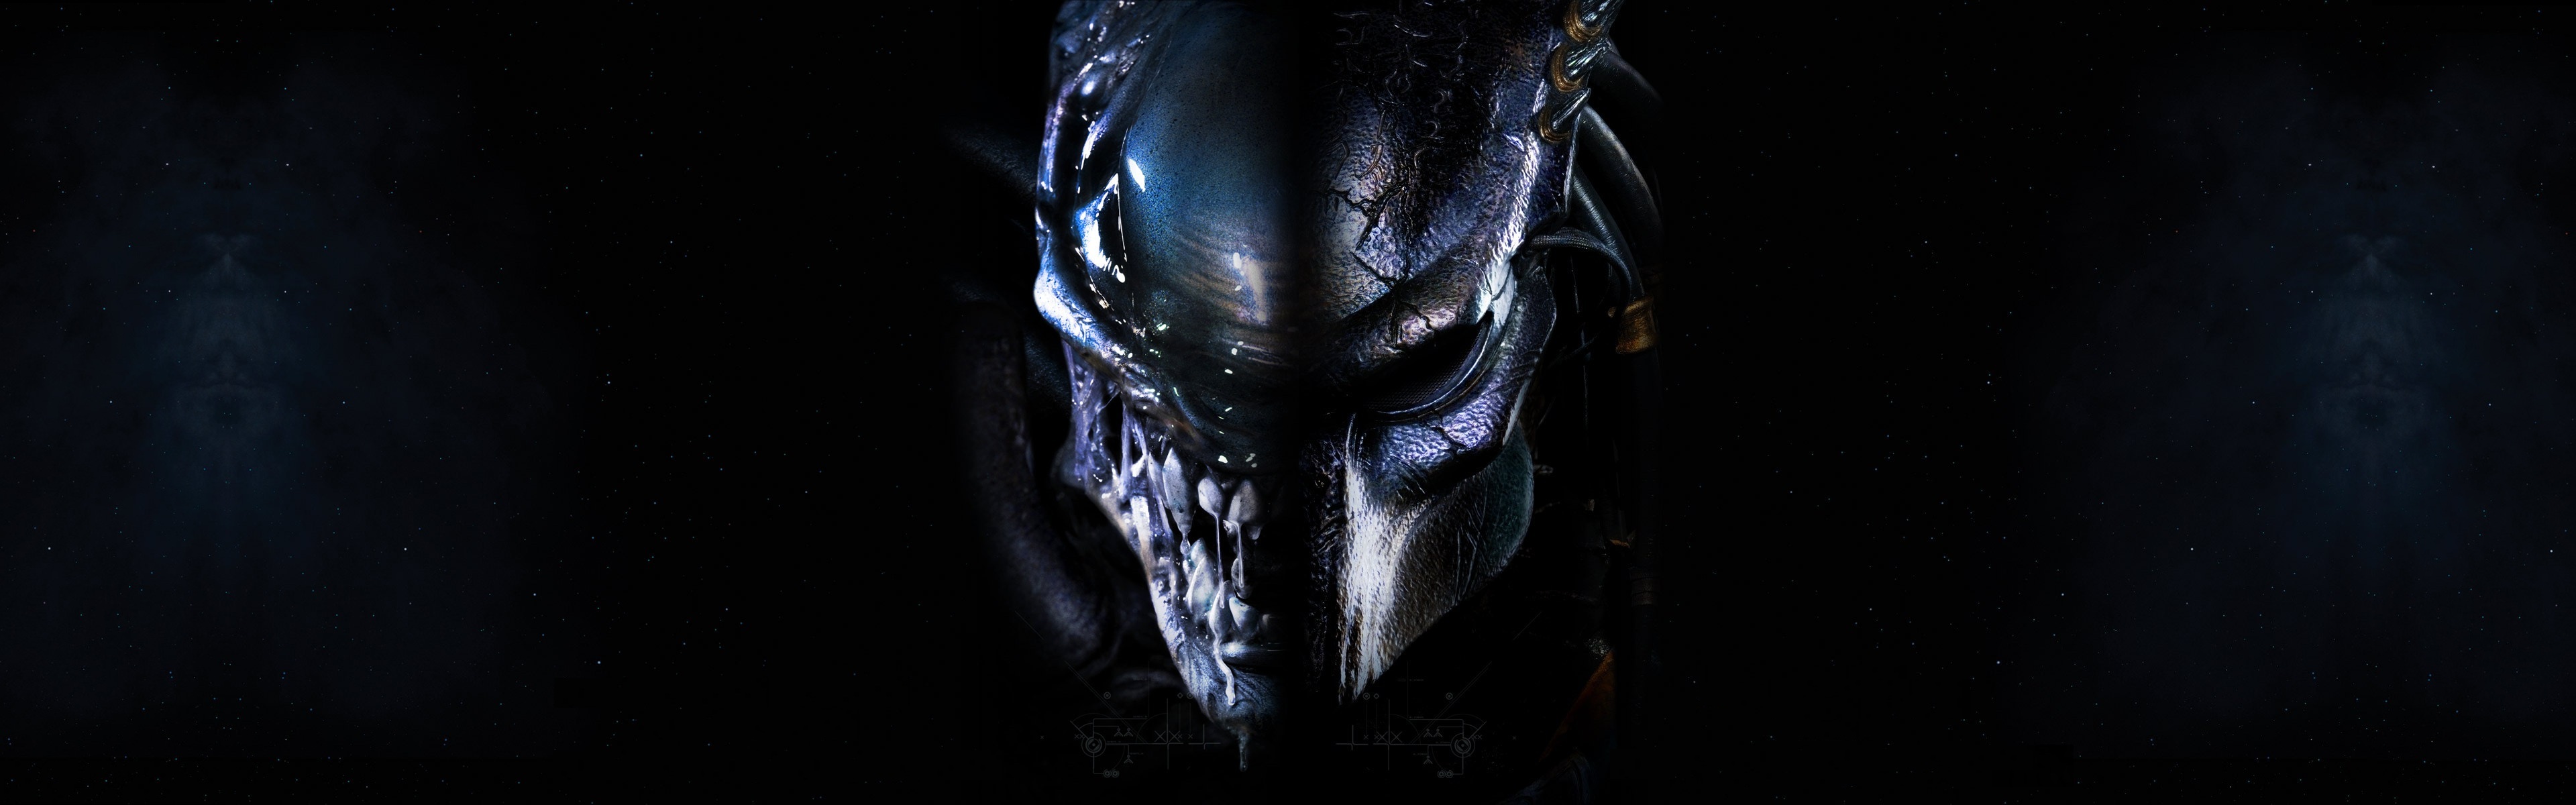 avp: alien vs predator, movie, predator